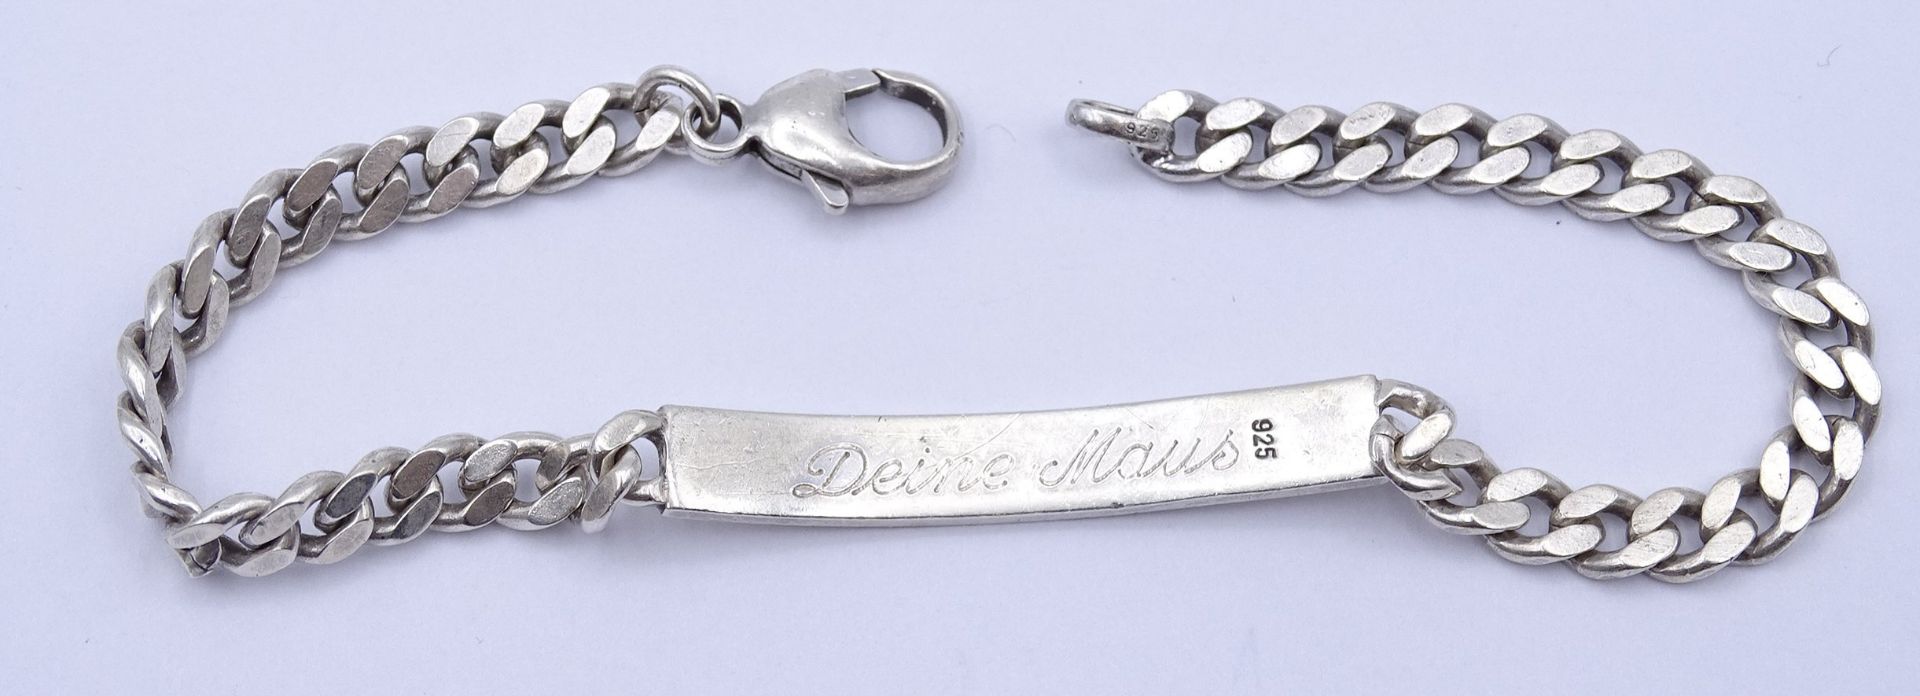 925er Silber Armband mit Gravur "Ich liebe dich - deine Maus", L. 22cm, 15,7g. - Bild 3 aus 3